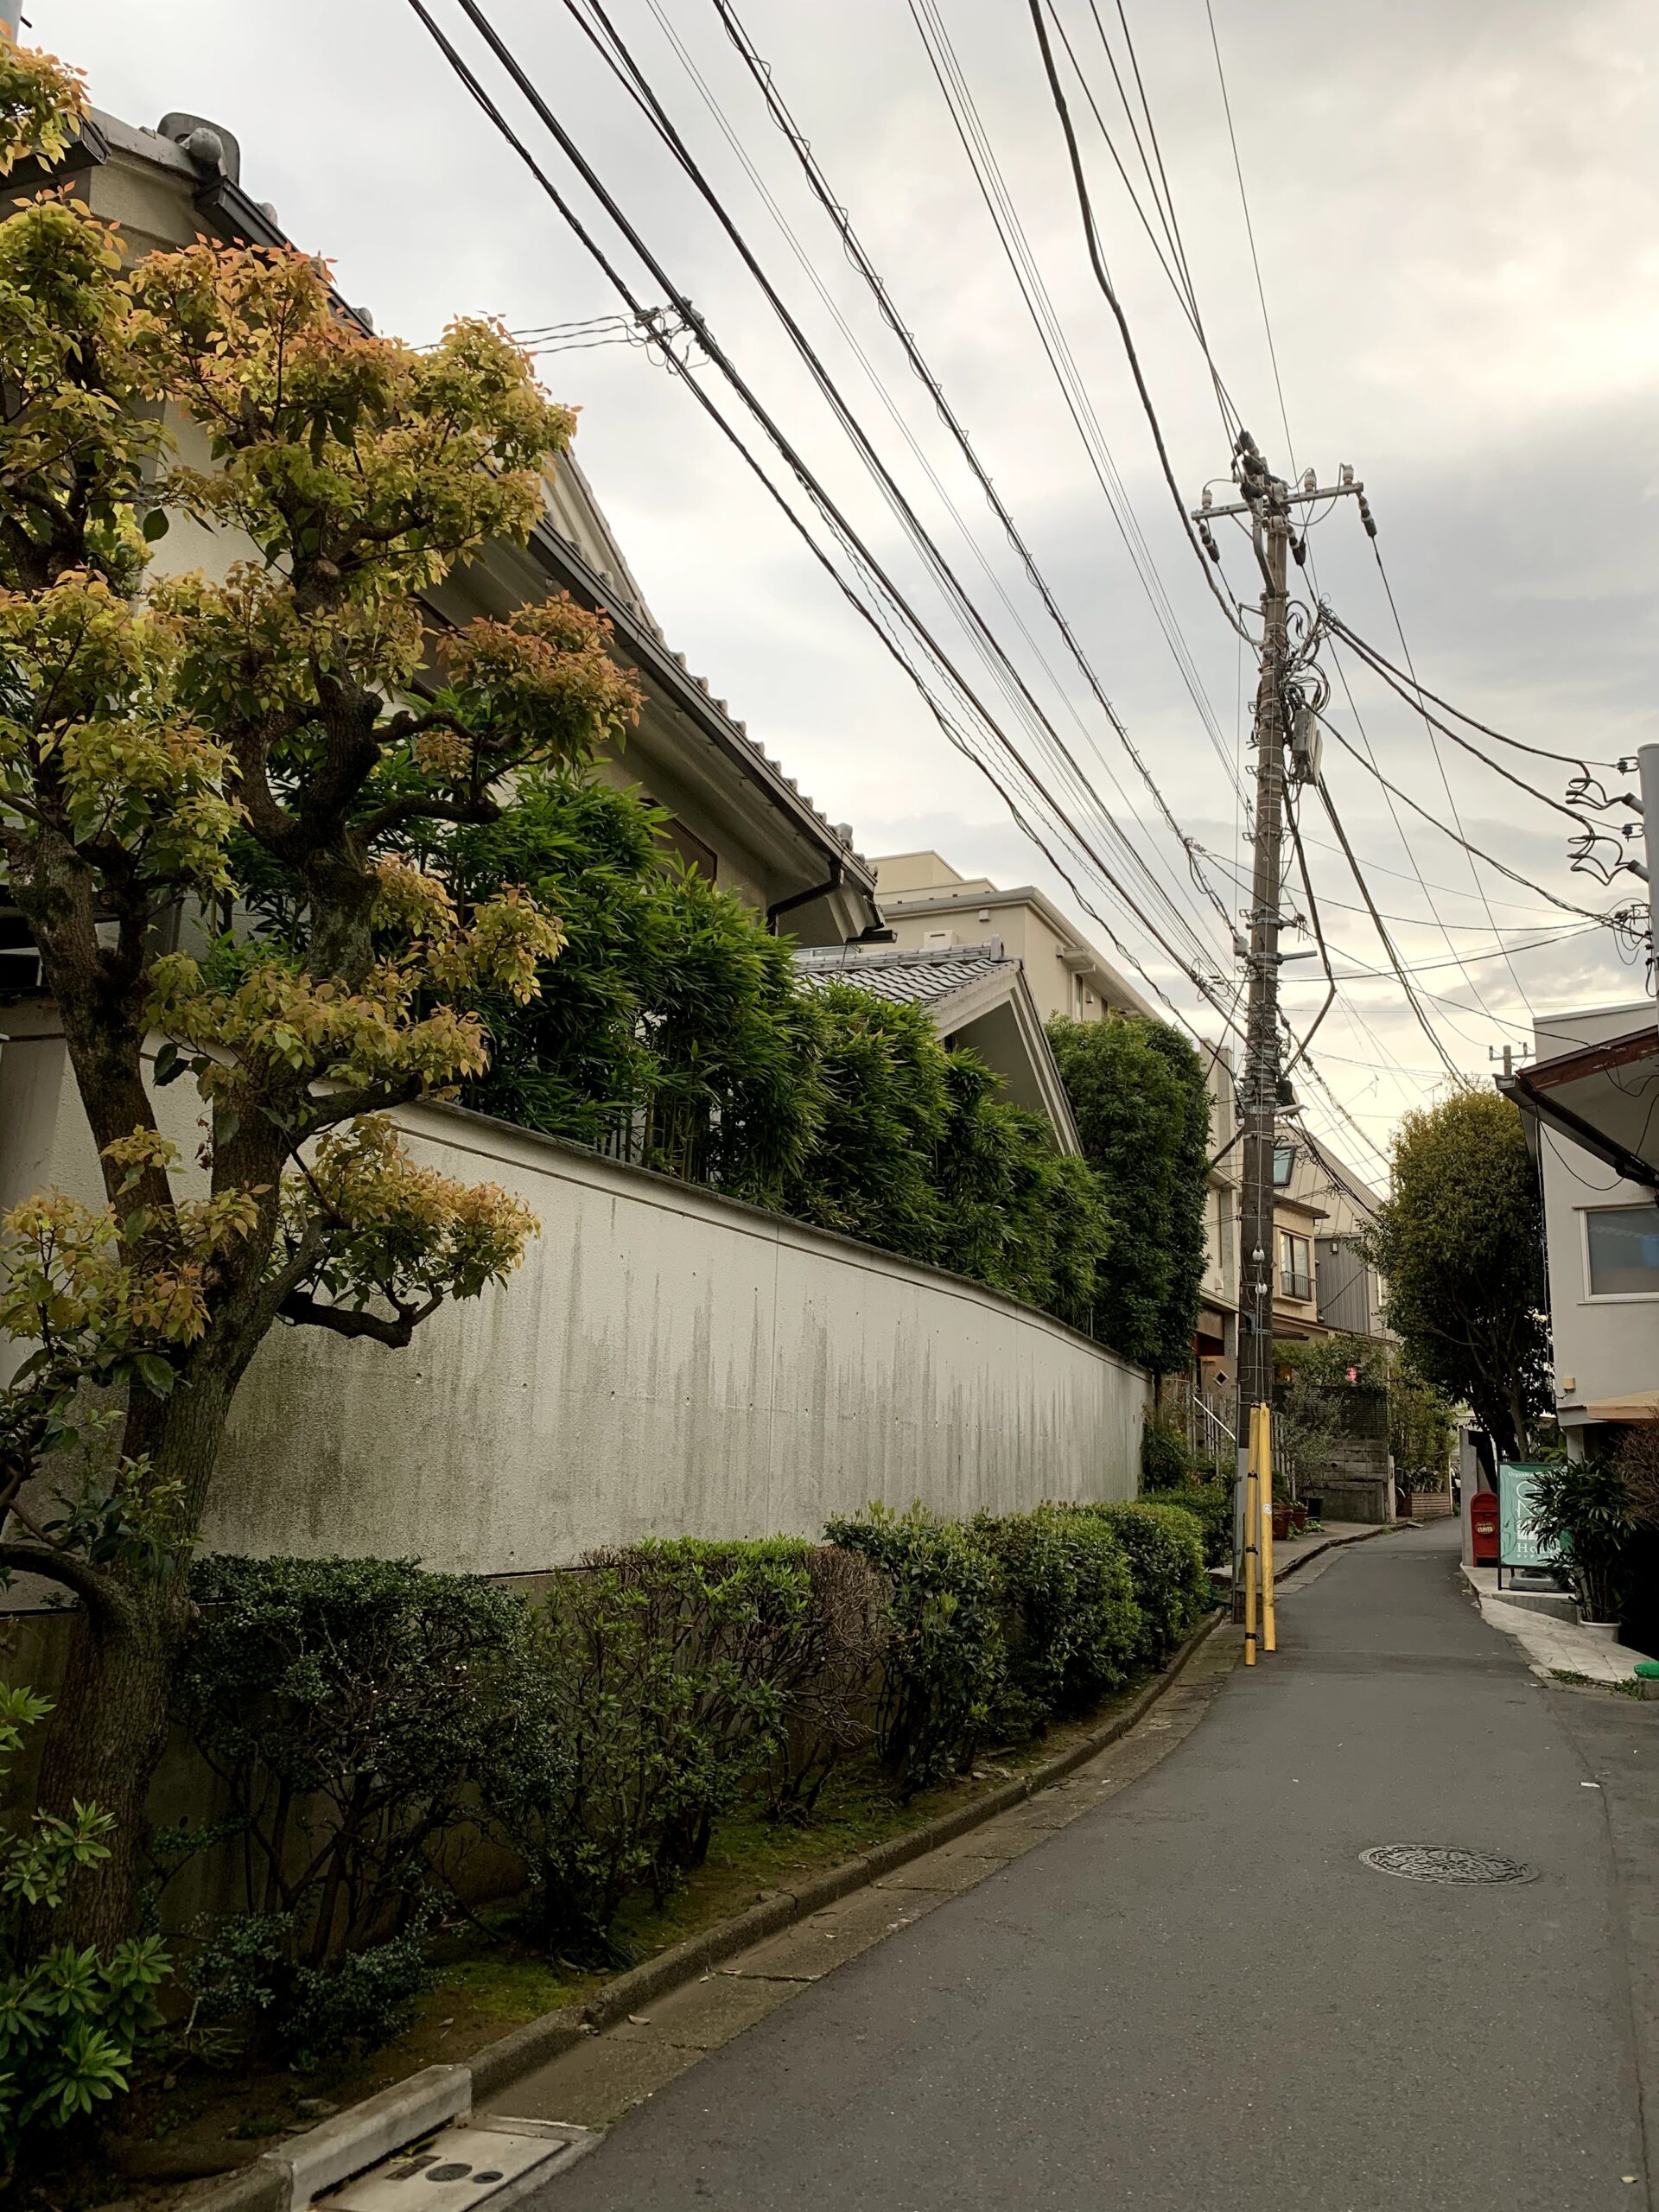 Quiet street in central Tokyo